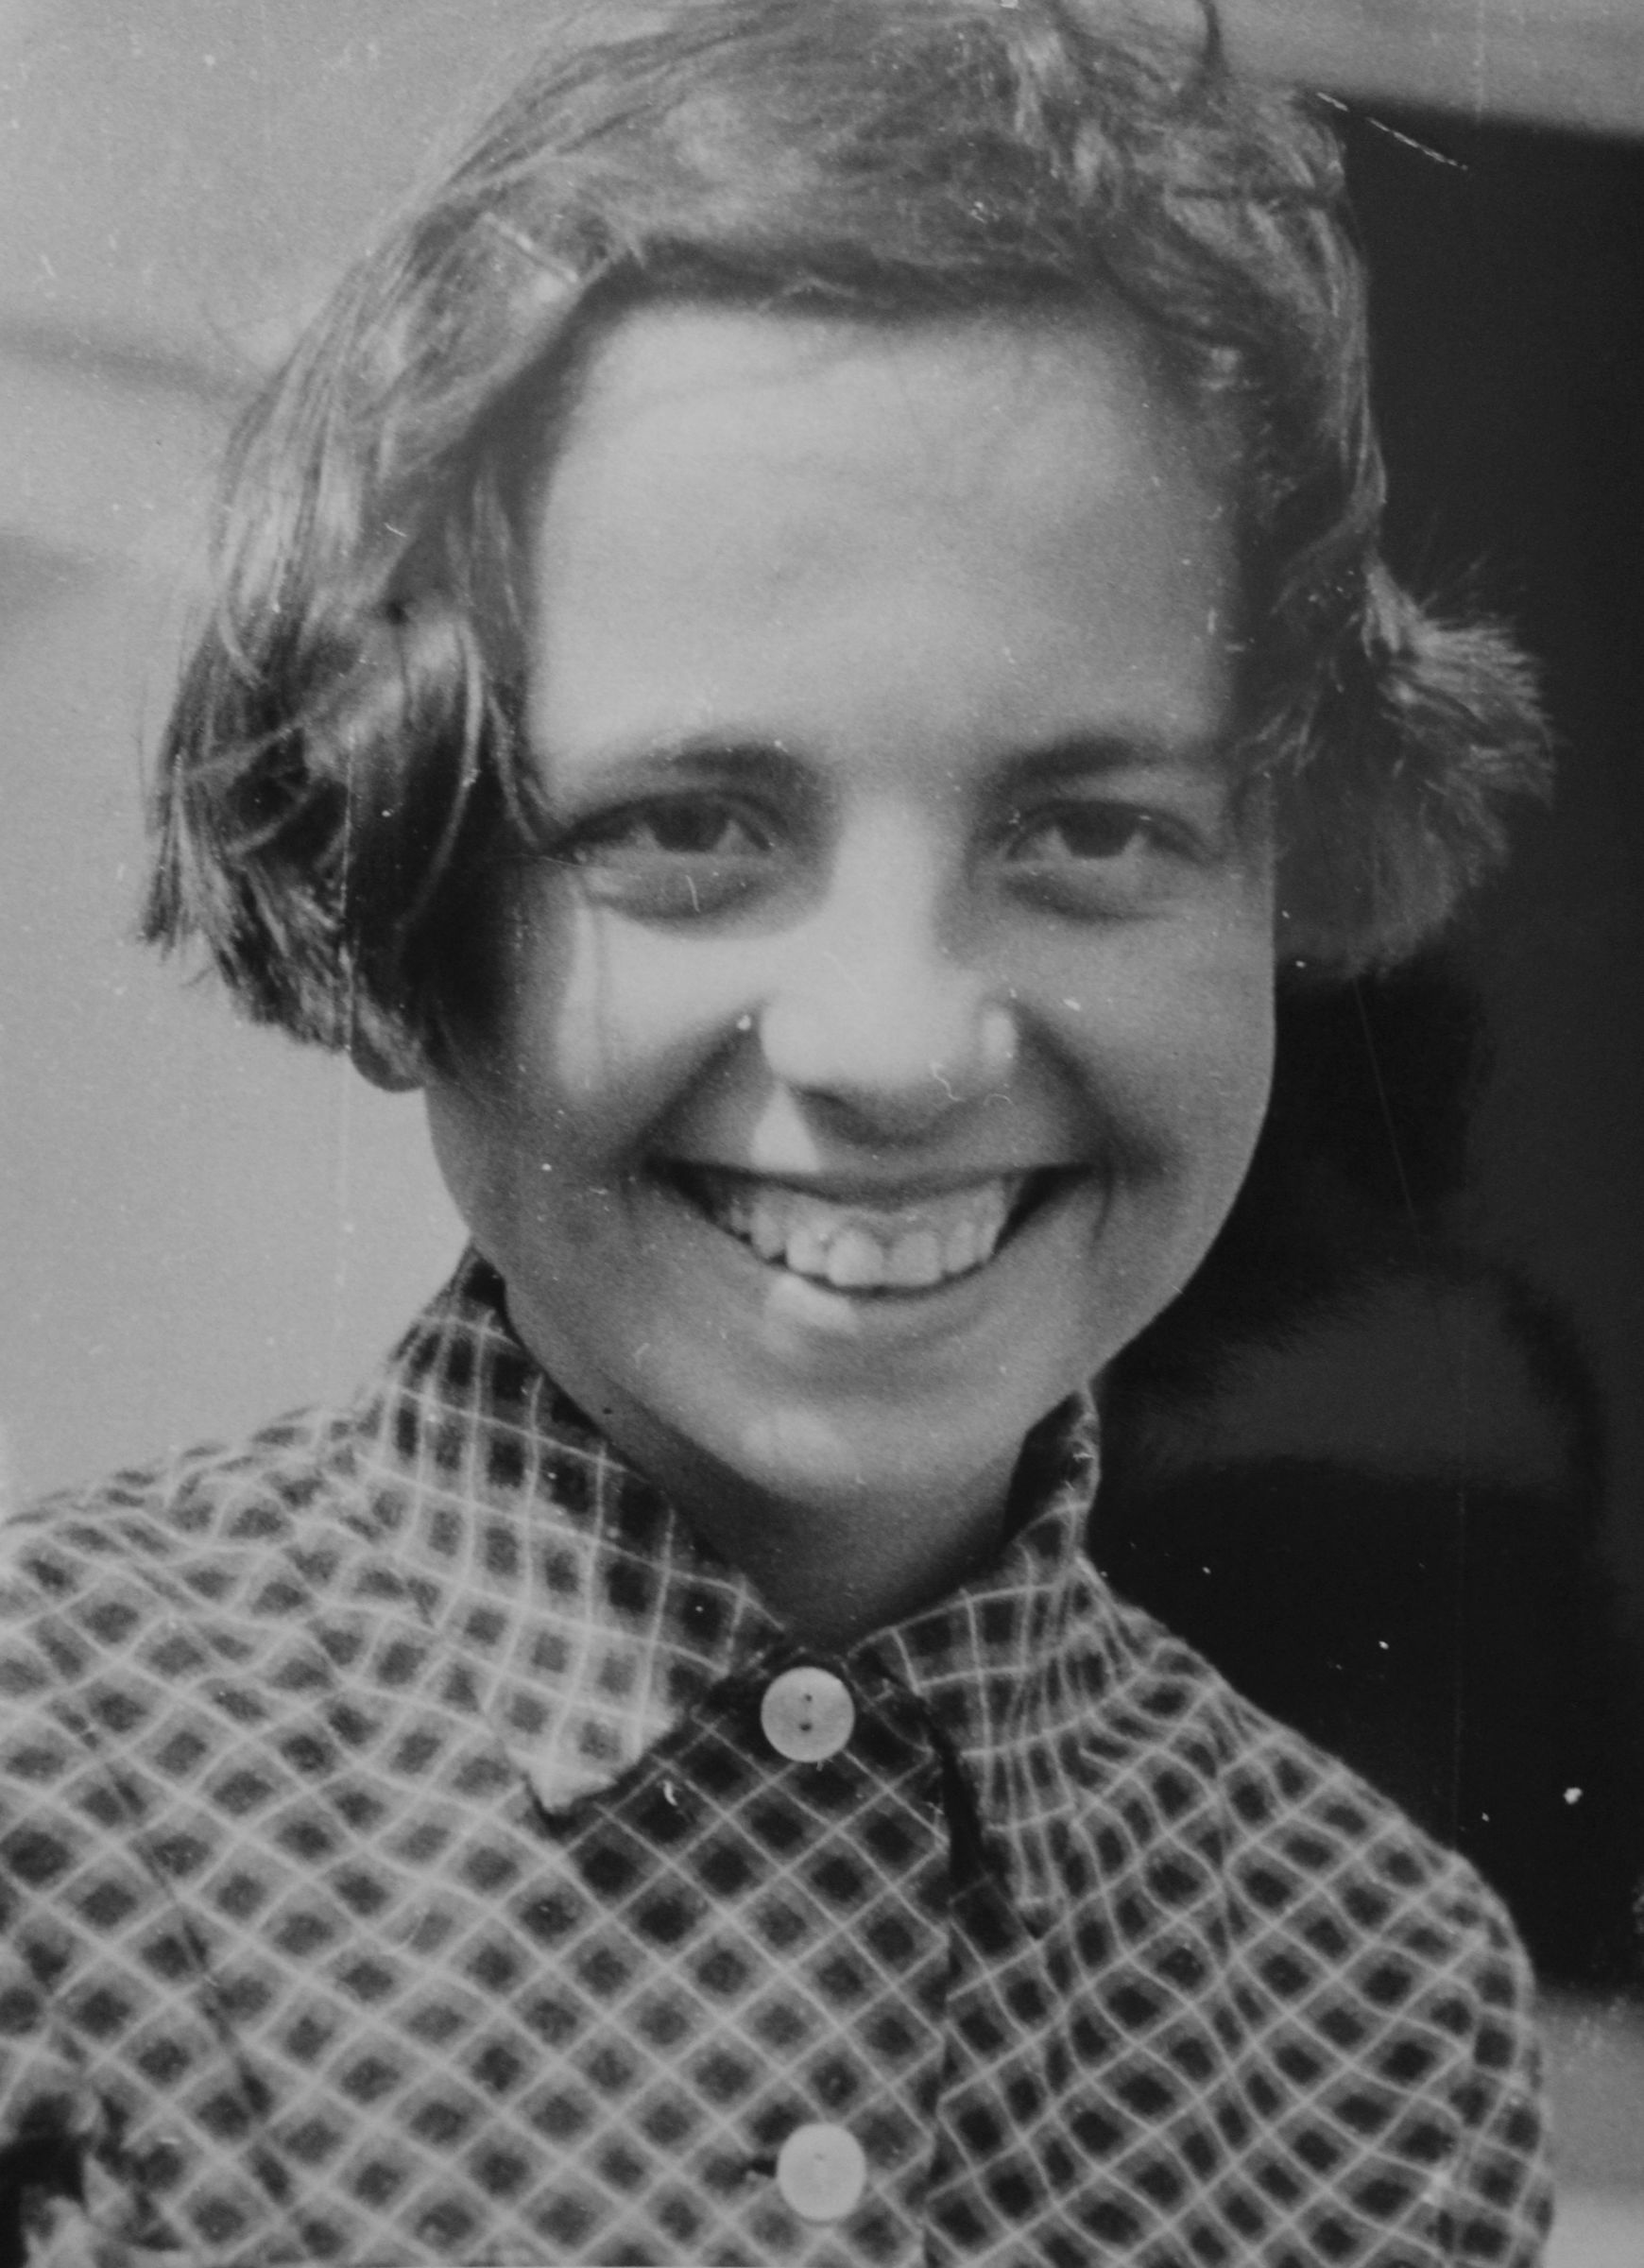 Ivana Bočková as a young woman